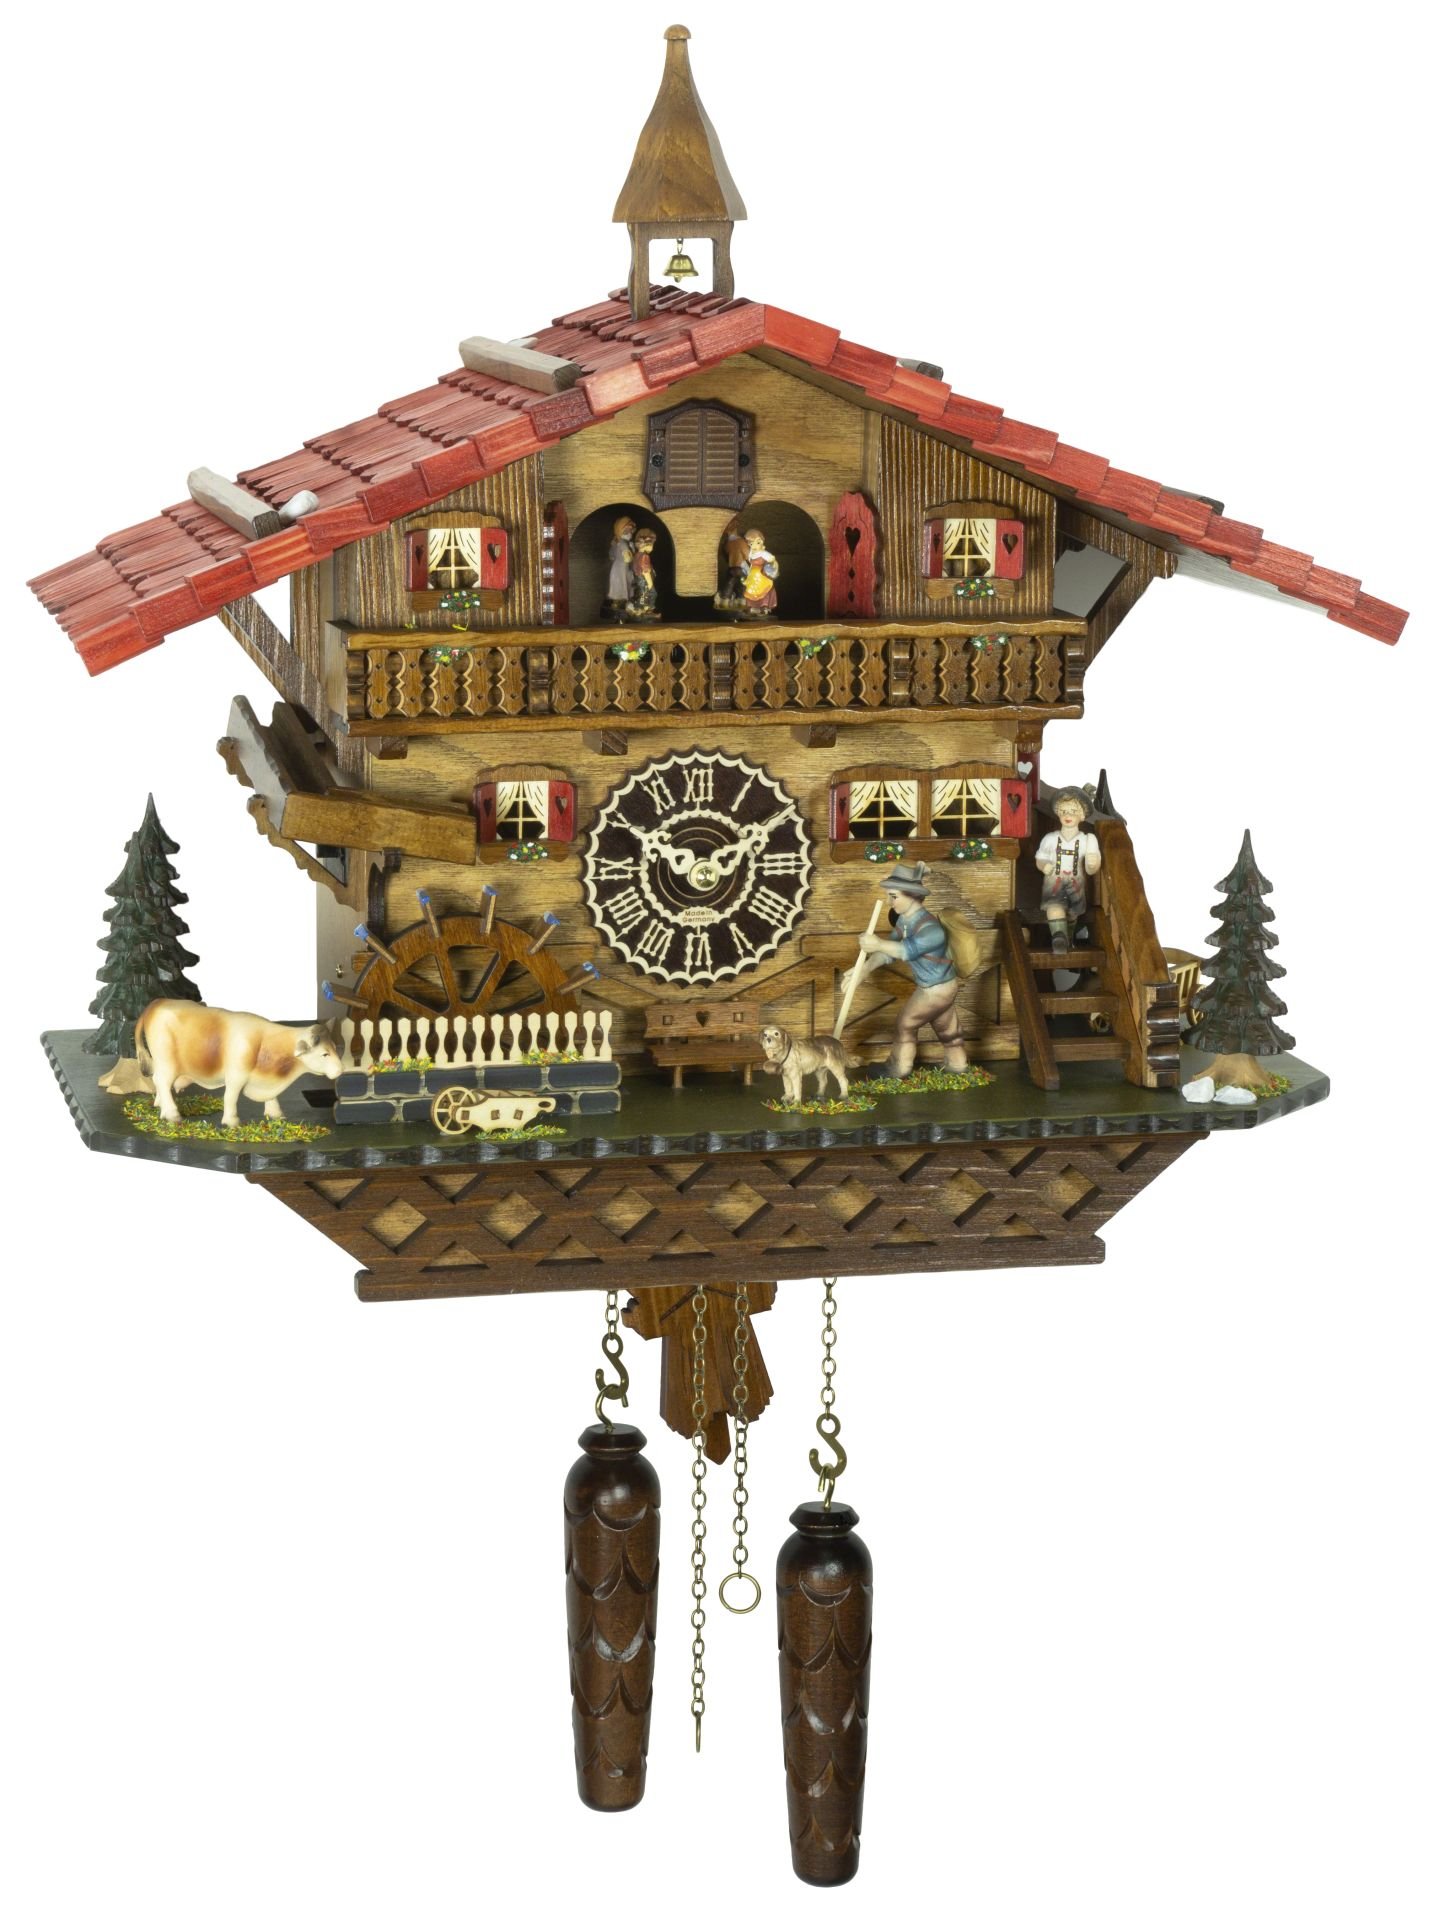 Kuckucksuhr Chalet-Stil Quarz-Uhrwerk 46cm von Trenkle Uhren